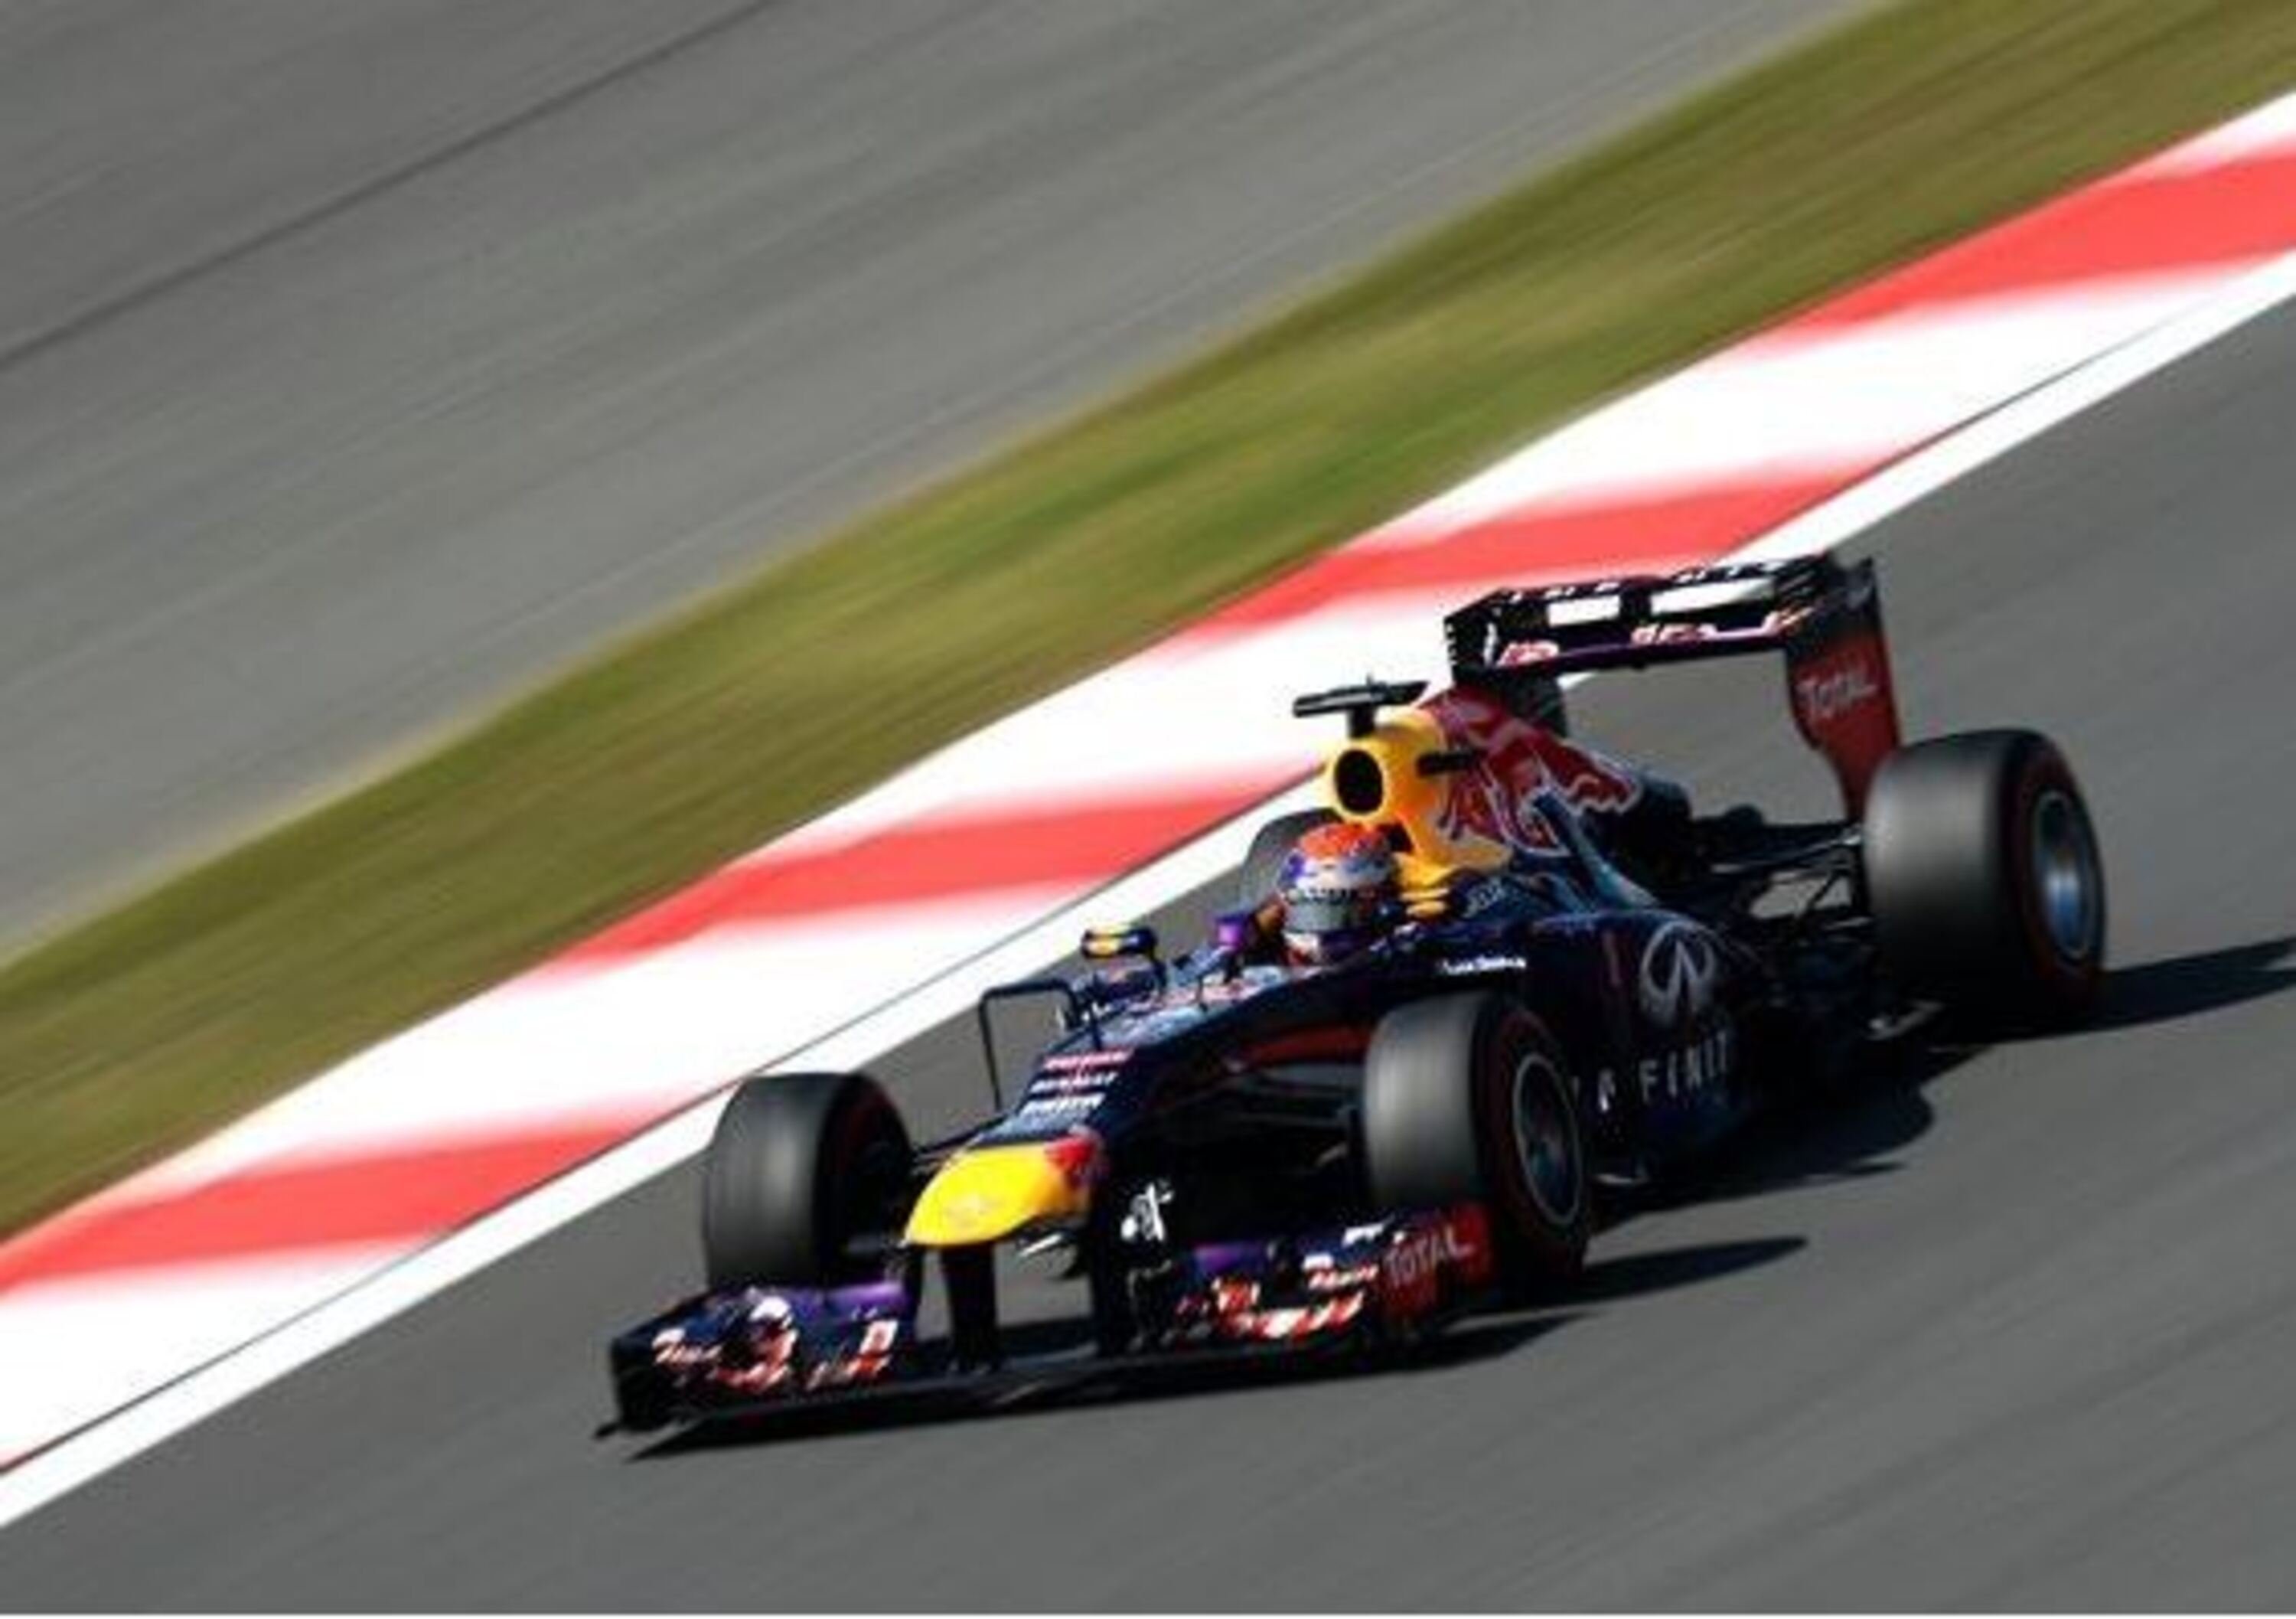 F1 Corea 2013: Vettel vince dominando il GP di Yeongam